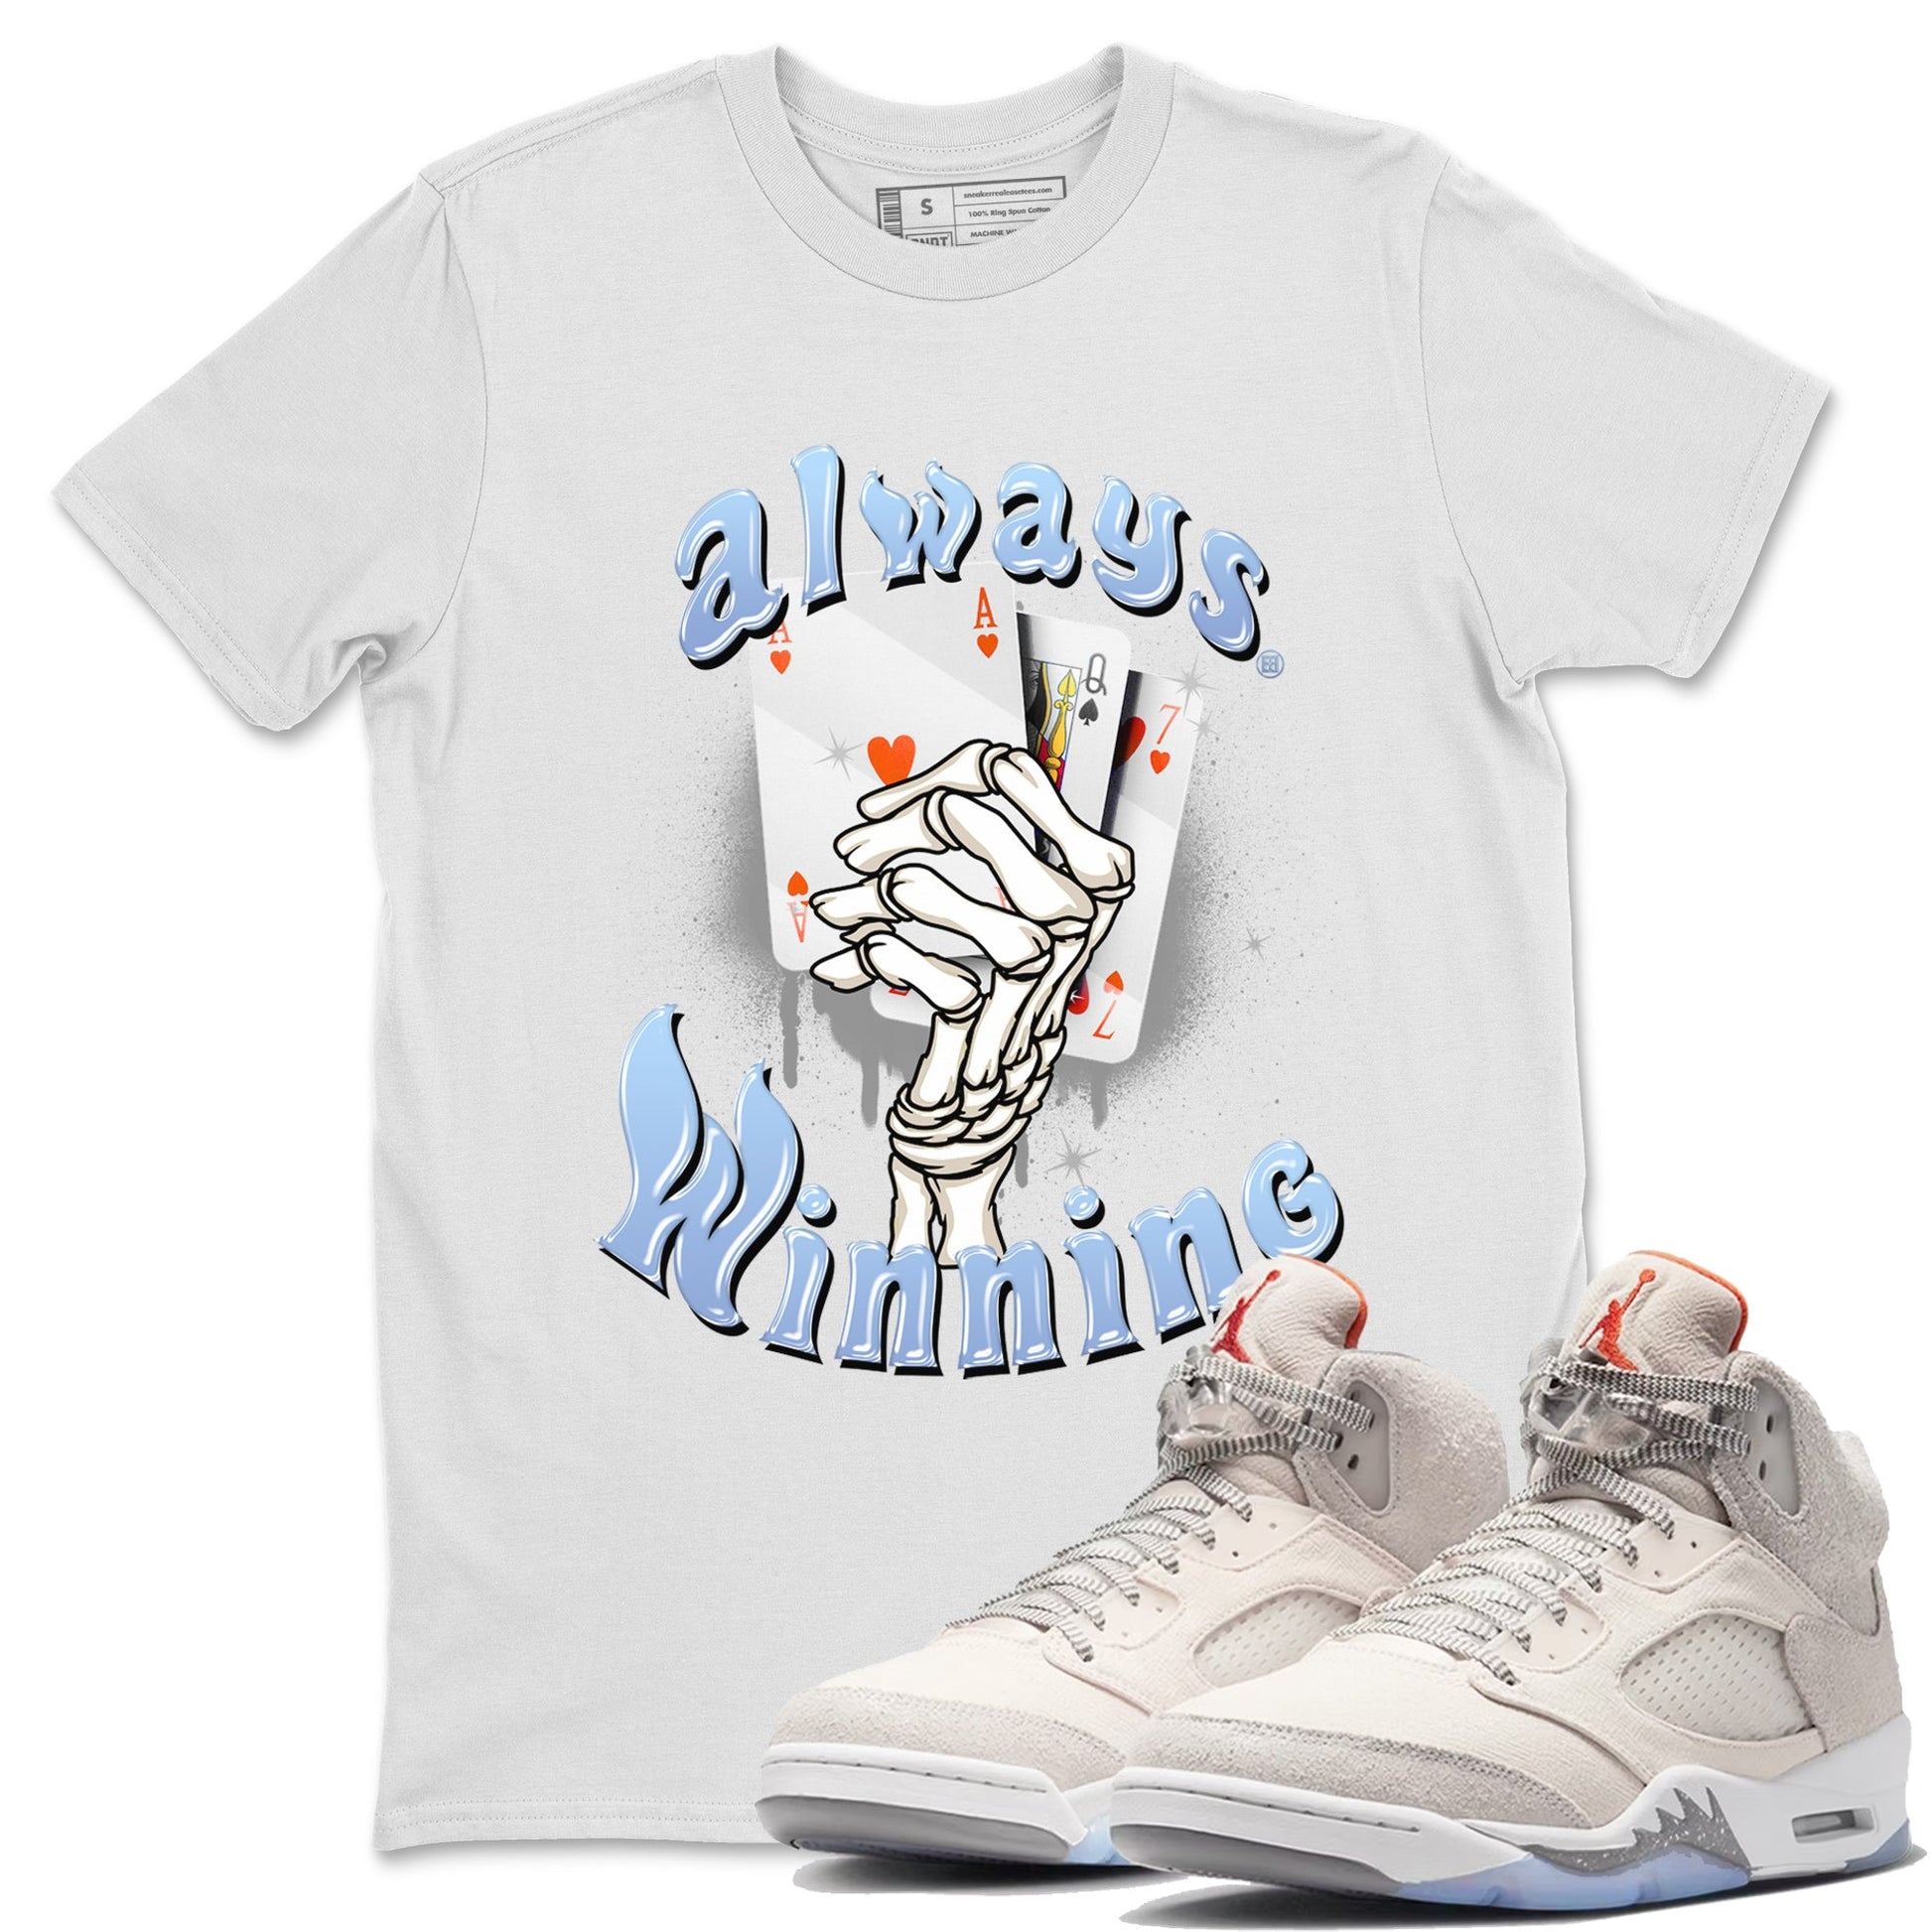 Air Jordan 5 Craft Sneaker Match Tees Always Winning Sneaker Tees Air Jordan 5 Retro Craft Shirts Unisex Shirts White 1